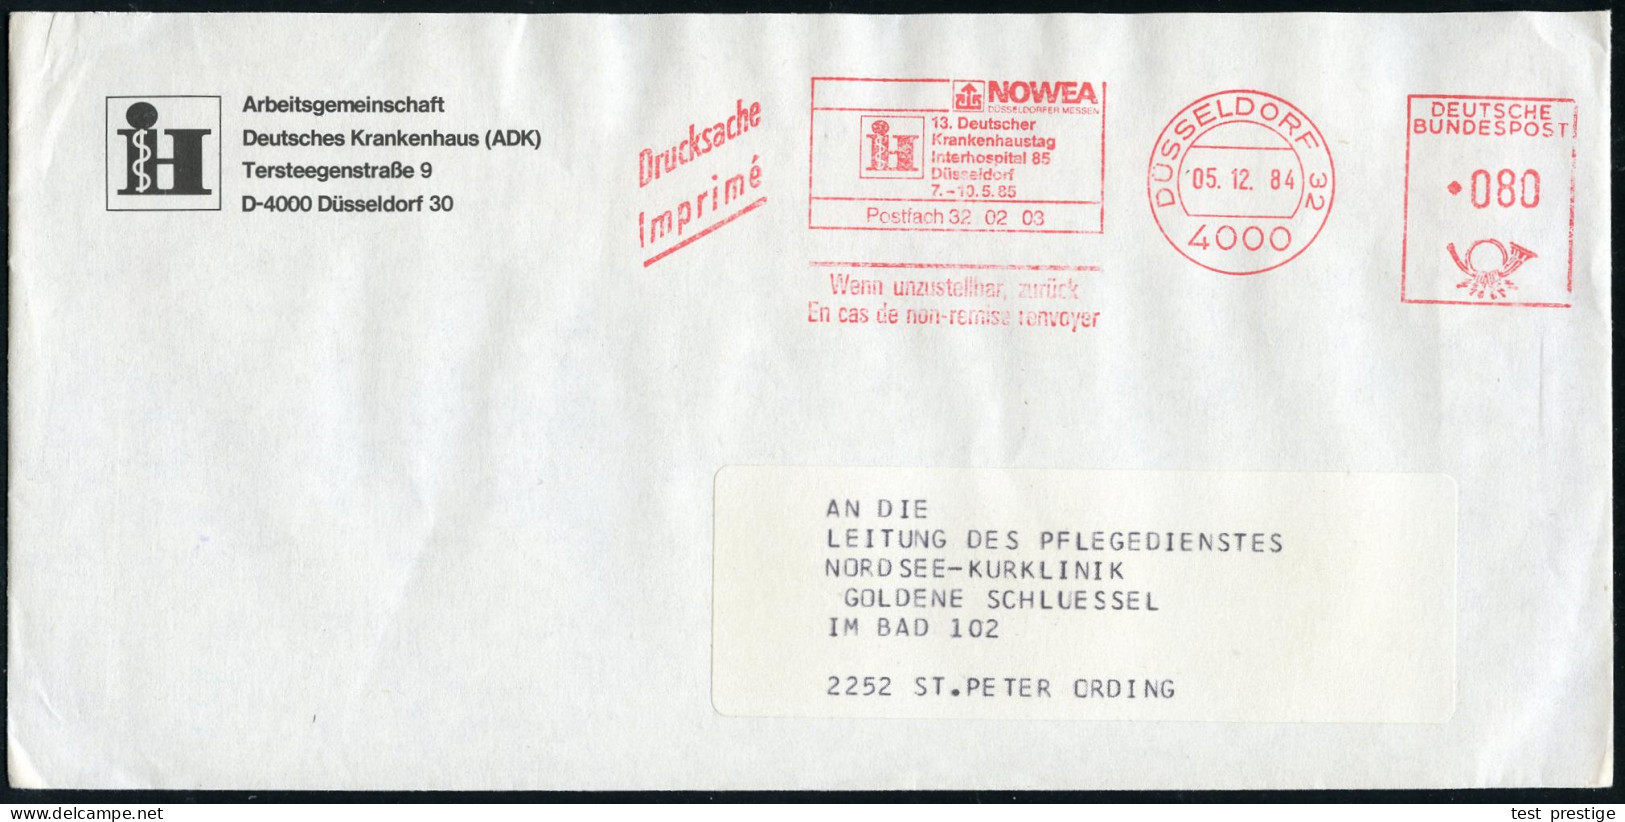 4000 DÜSSELDORF 32/ NOWEA/ !&sect;:Deutscher/ Krankenhaustag/ Interhospital 85.. 1984 (5.12.) AFS (Logo) Auf Vordruck-Bf - Medicina